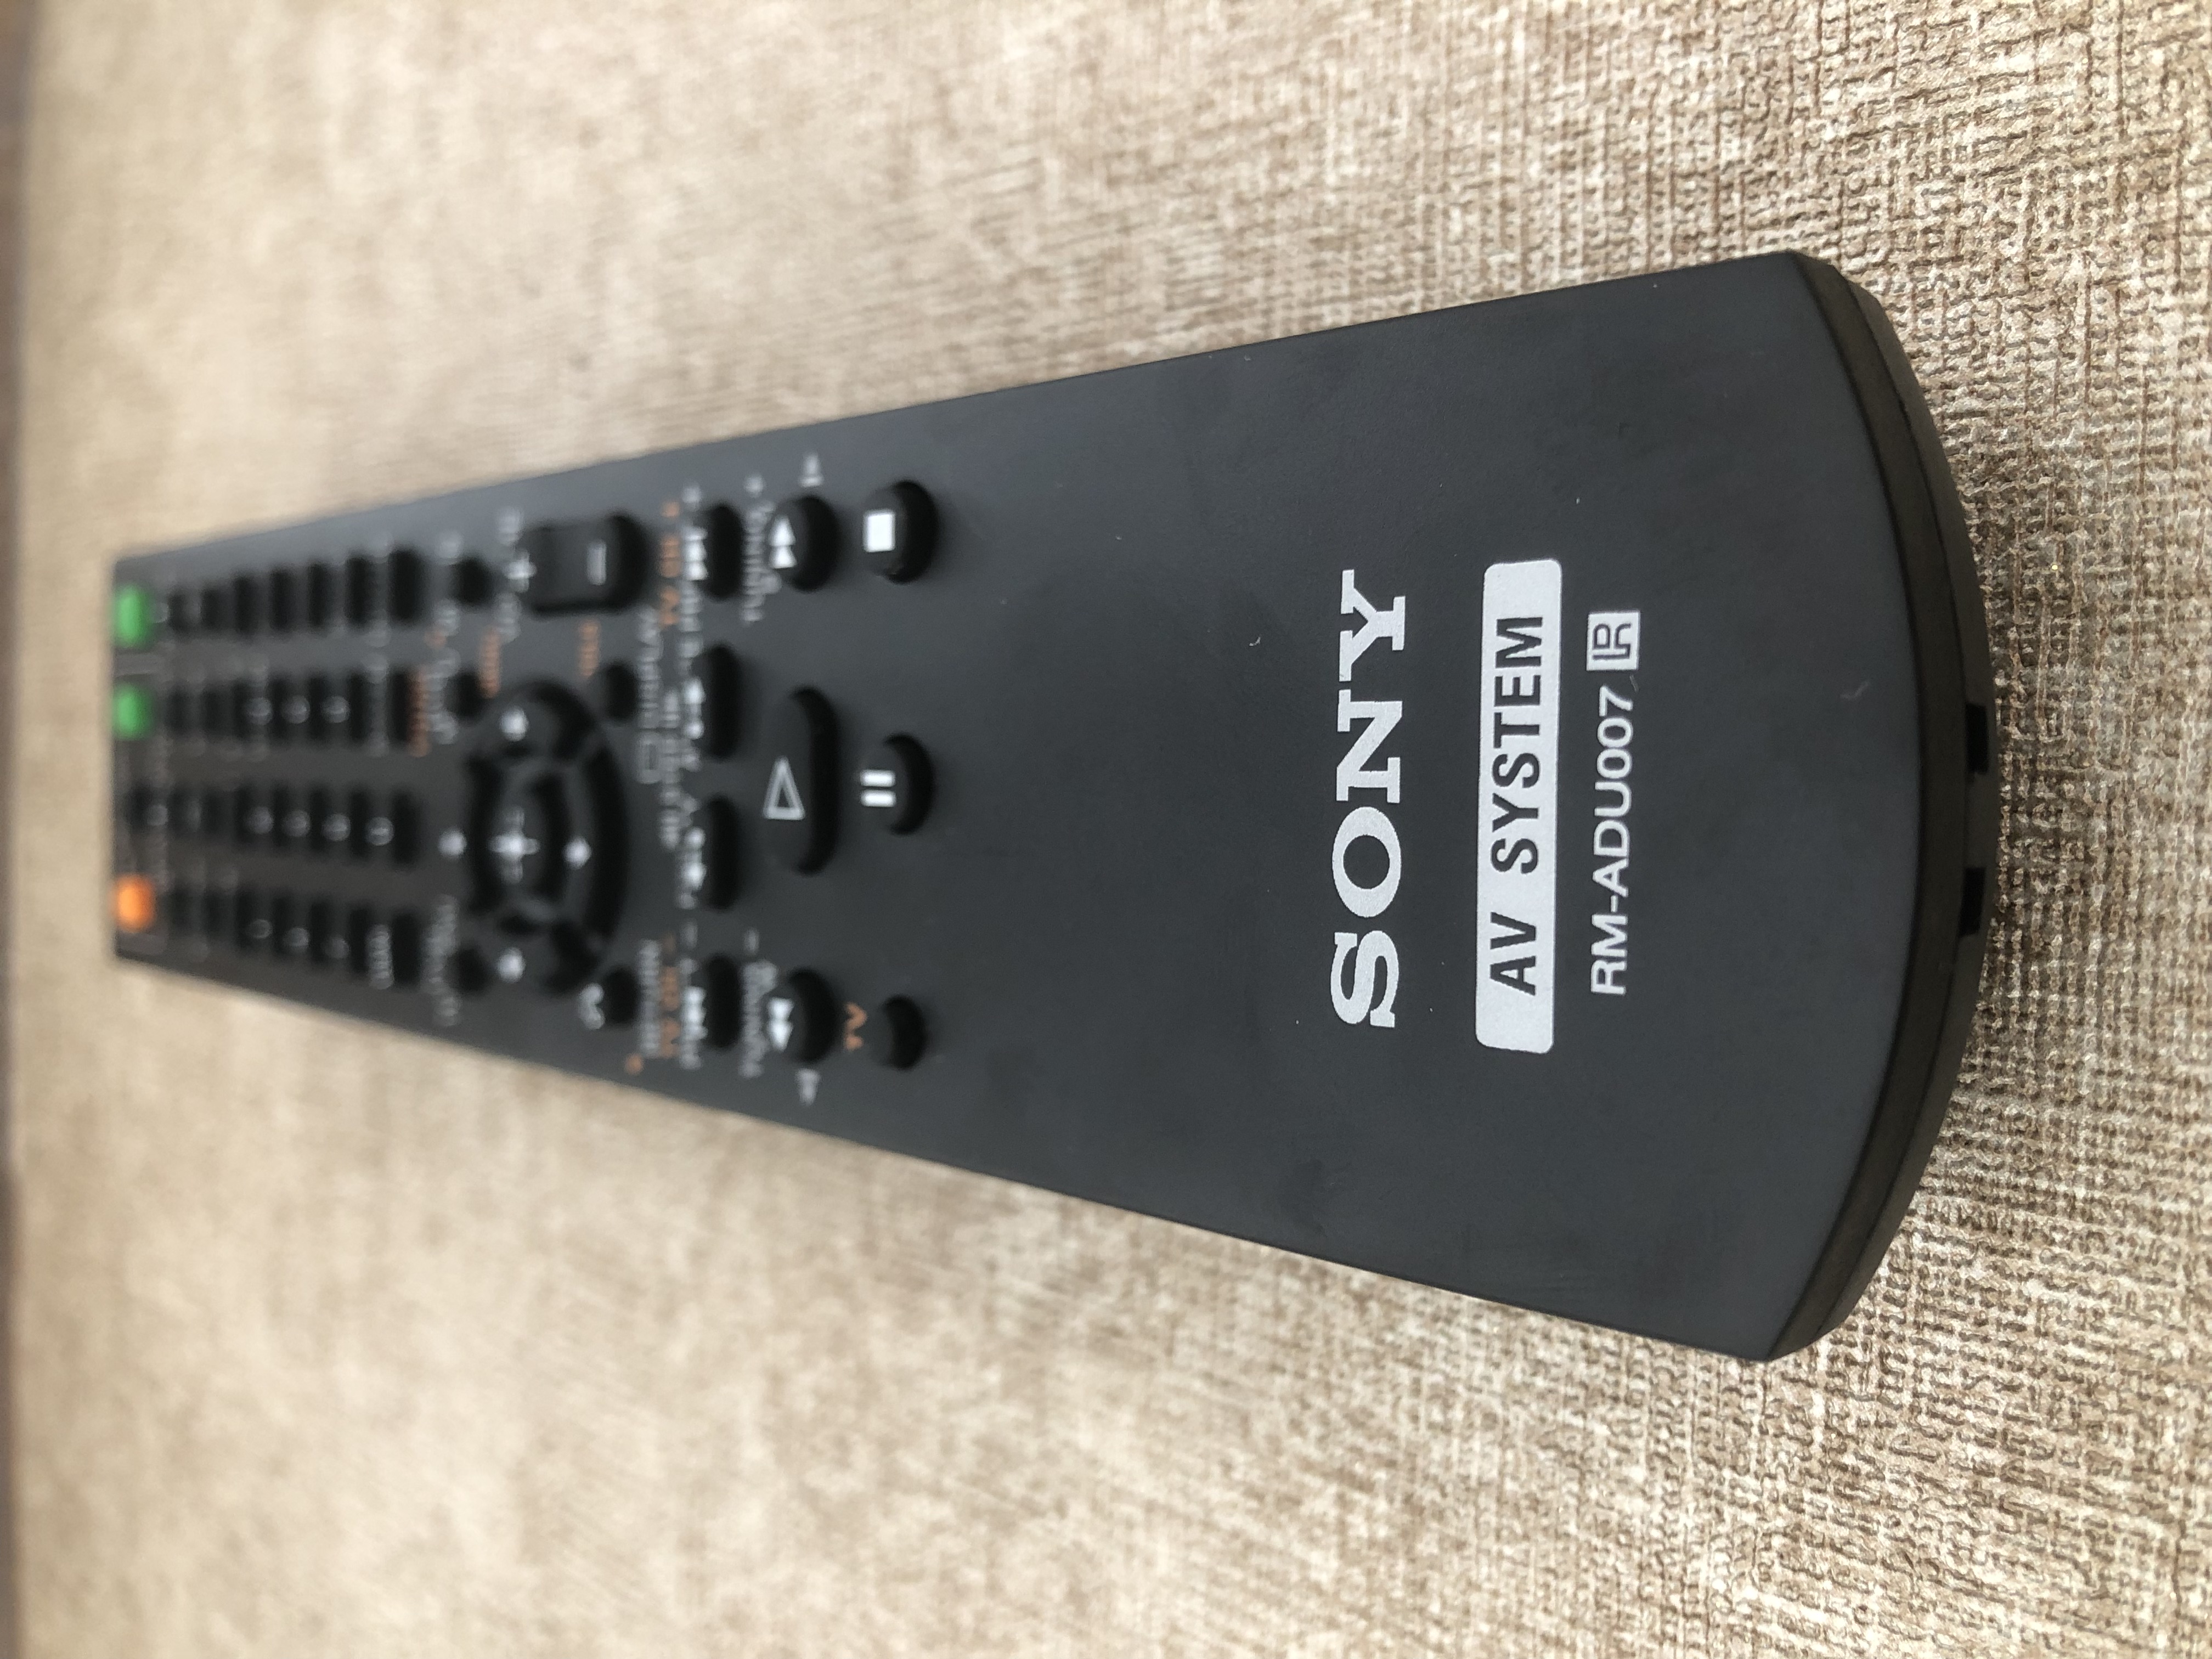 Remote điều khiển dàn âm thanh  dành cho Sony RM- ADU007